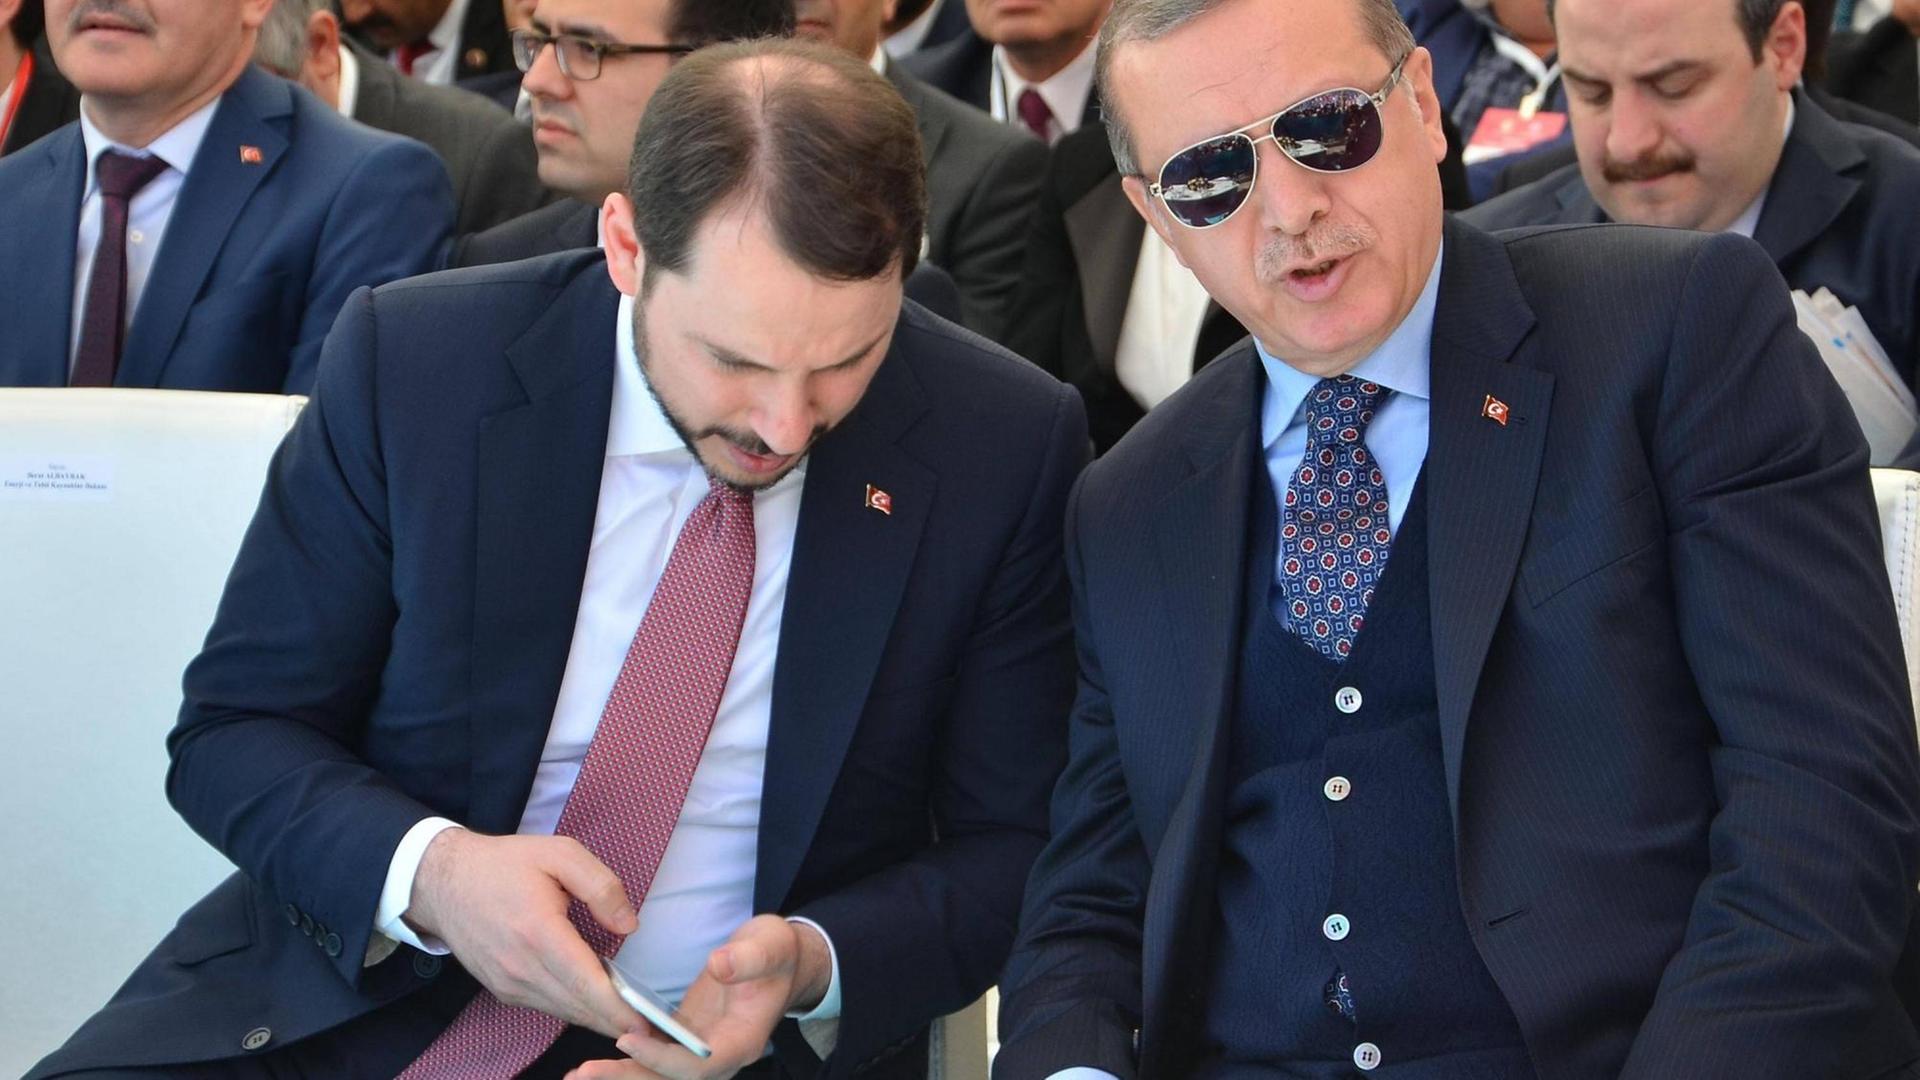 Der Türkische Staatspräsident Erdogan sitzt zusammen mit seinem Schwiegersohn Berat Albayrak bei einer Veranstaltung.